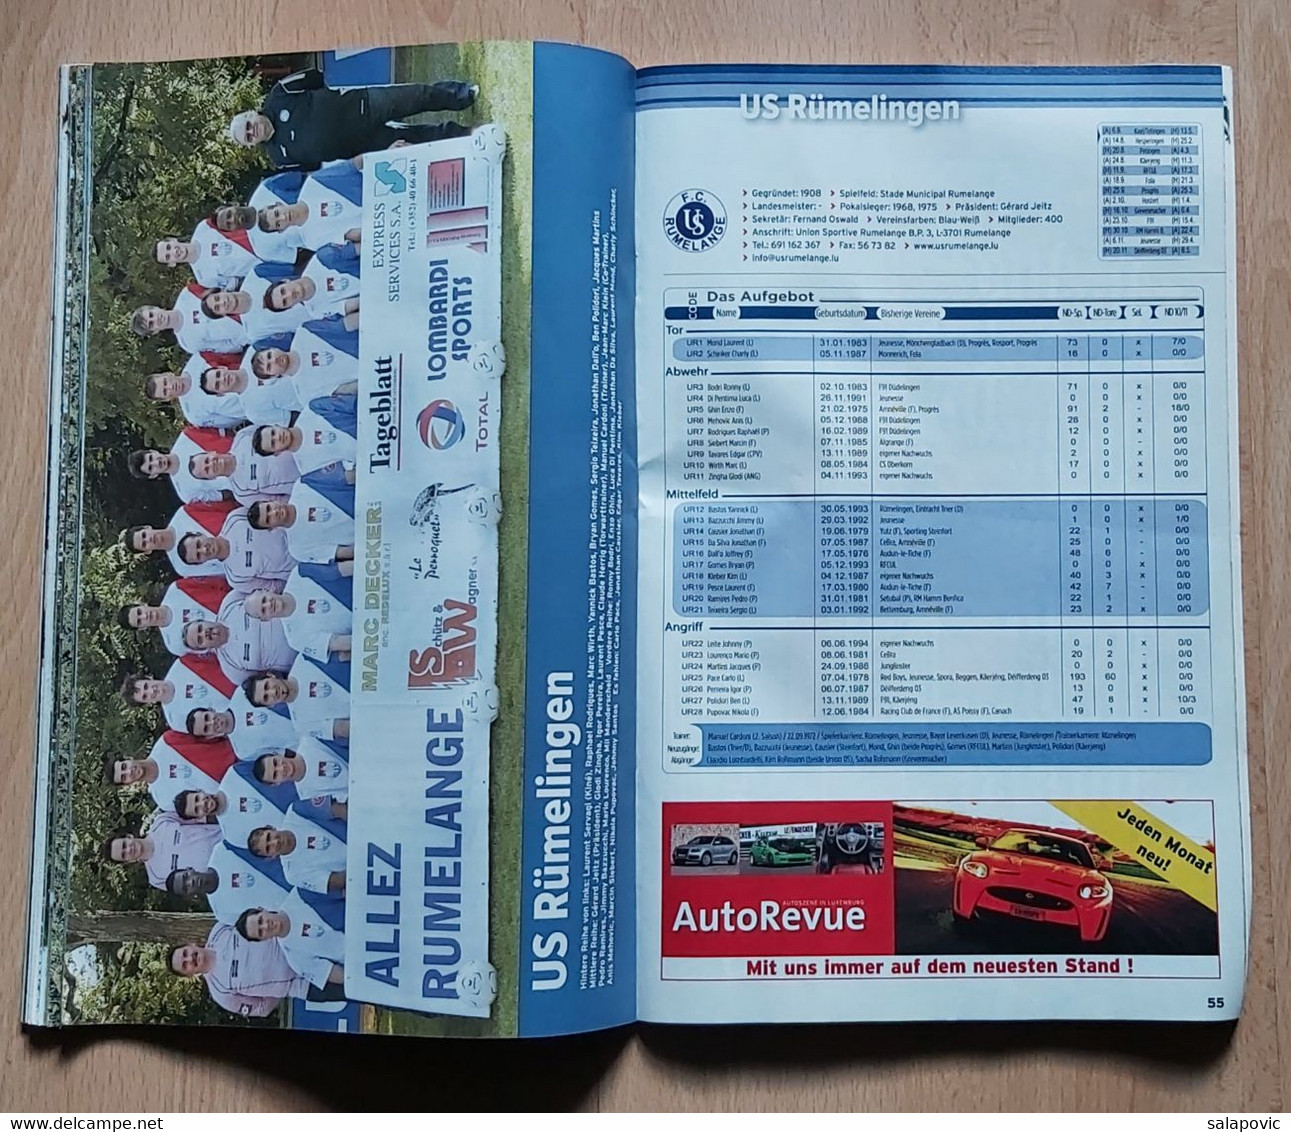 Luxembourg Tageblatt Ustouss de Fussballmagazin Saison 2011/2013 BGL Ligue und Ehrenpromotion football